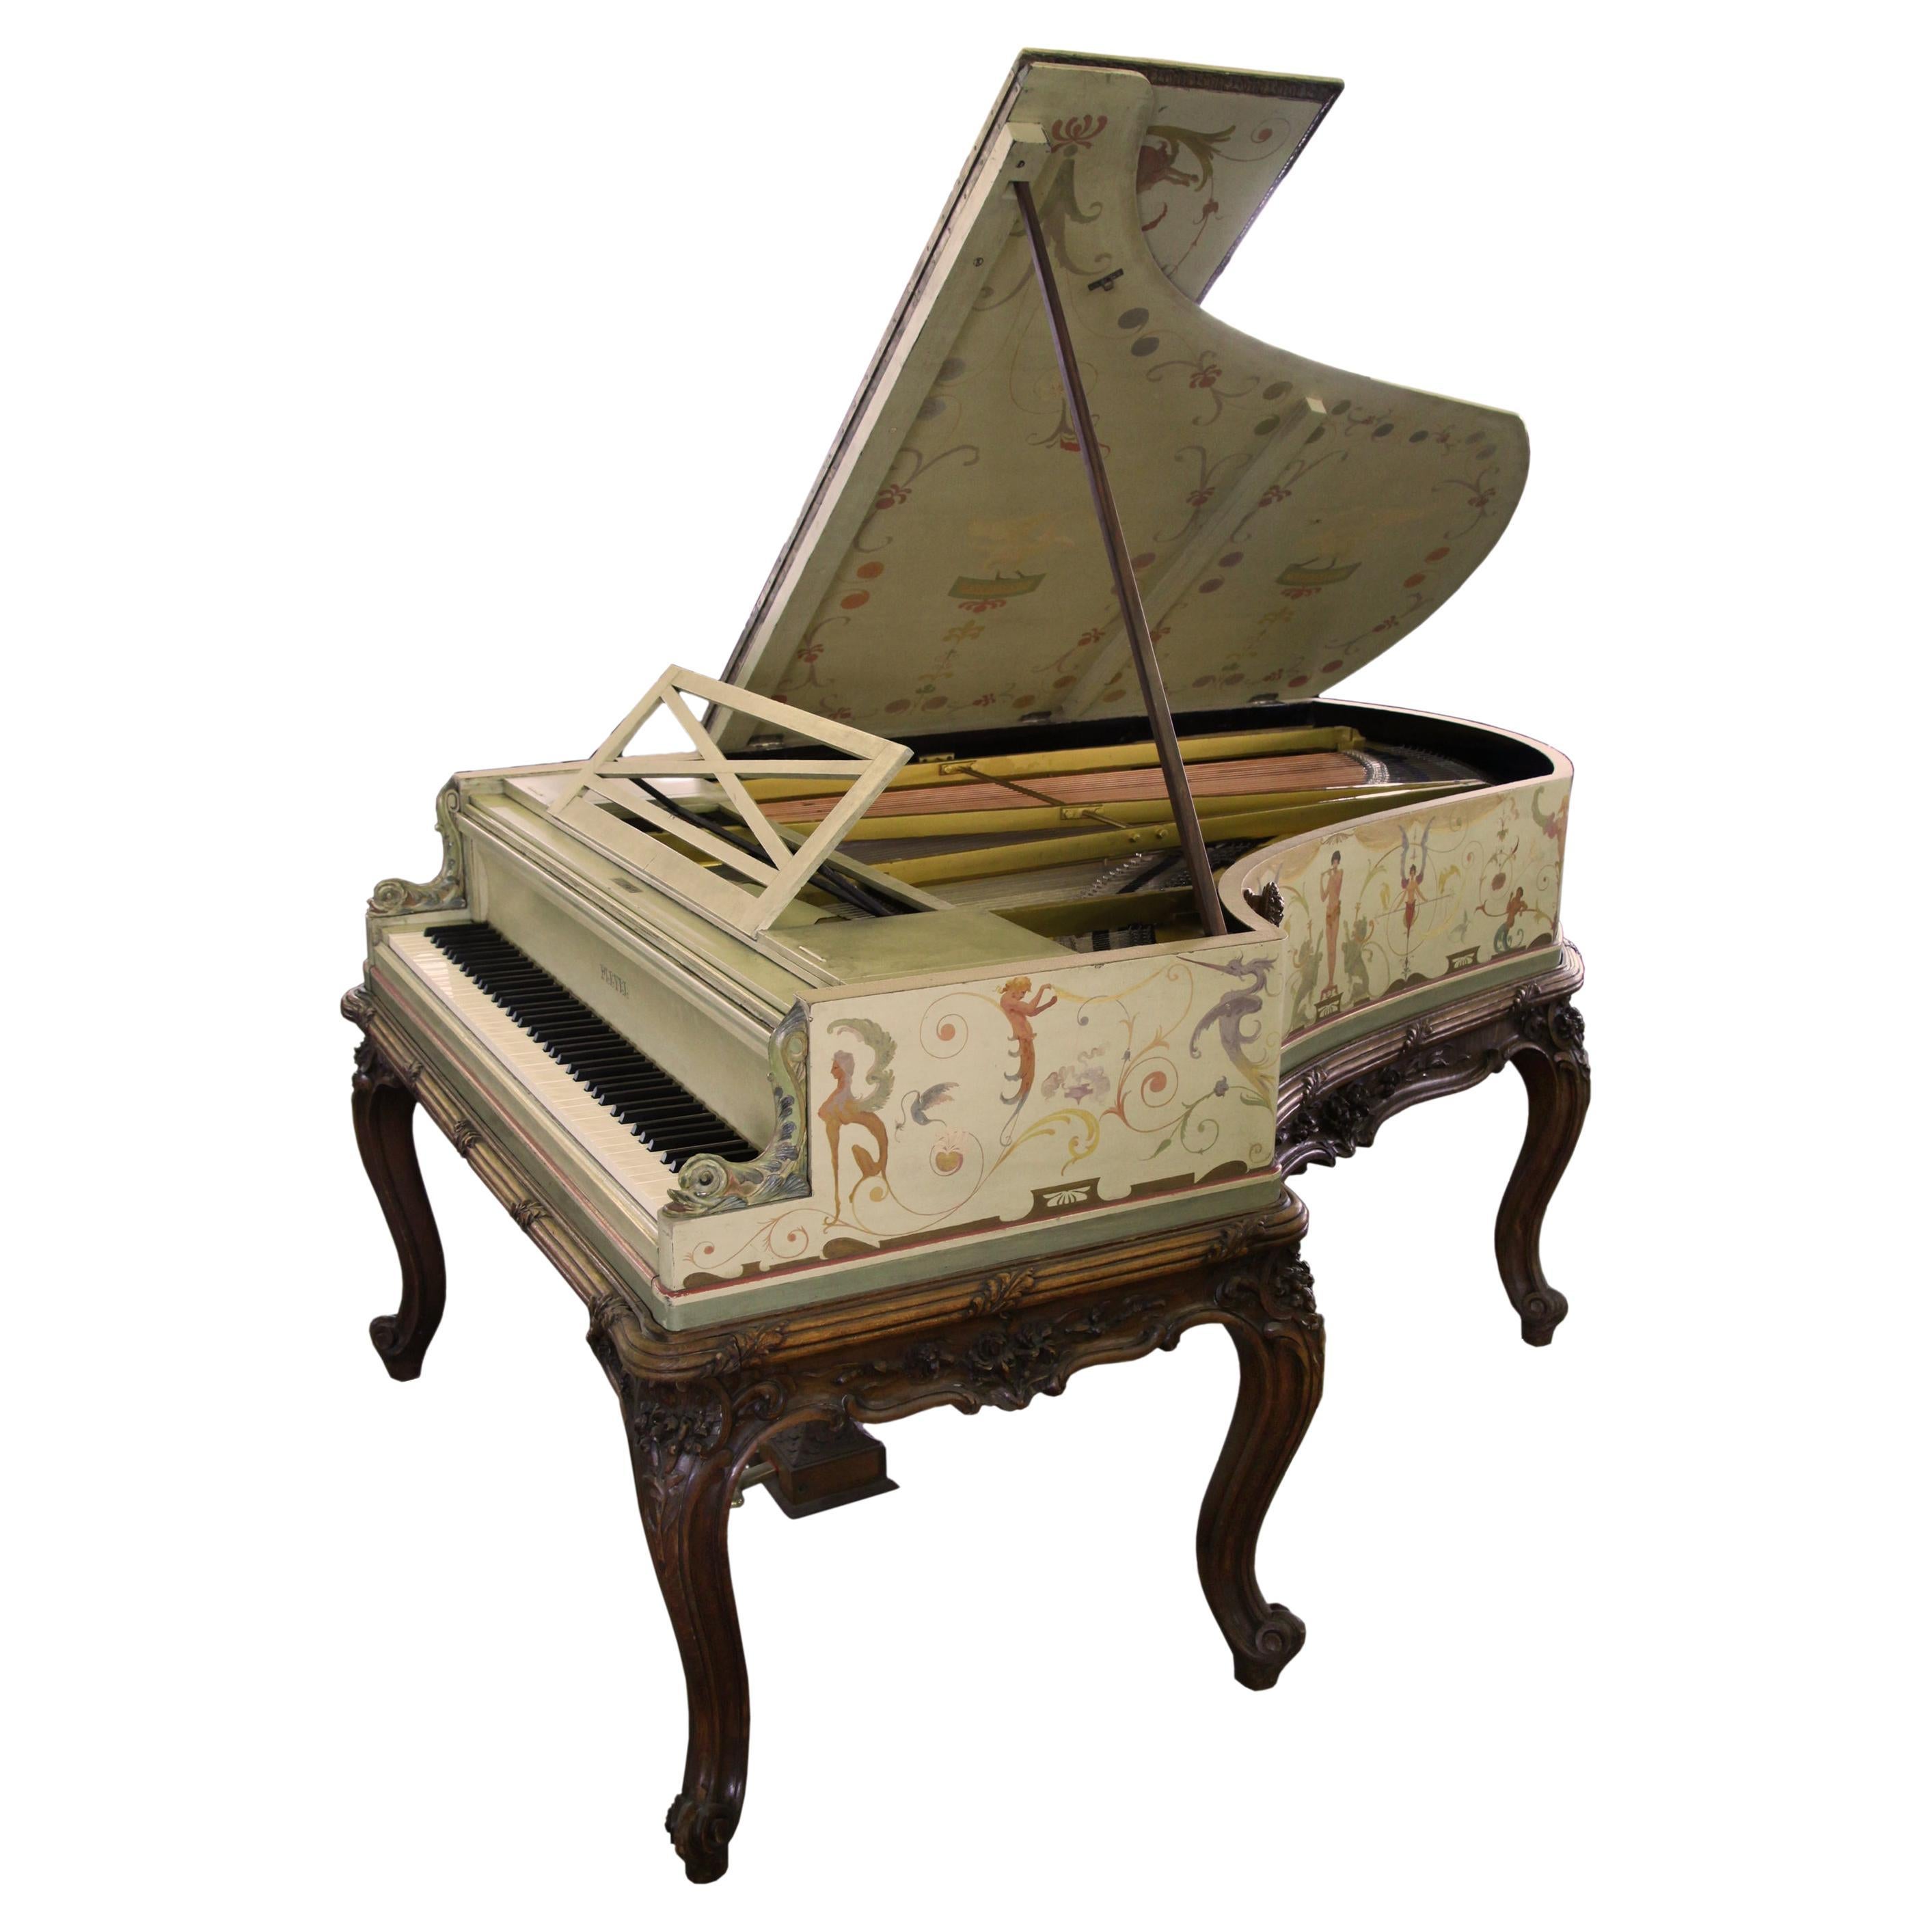 Großes Klavier, handbemaltes Cabriole-Bein im Berainesque-Stil, signiert G. Meunier